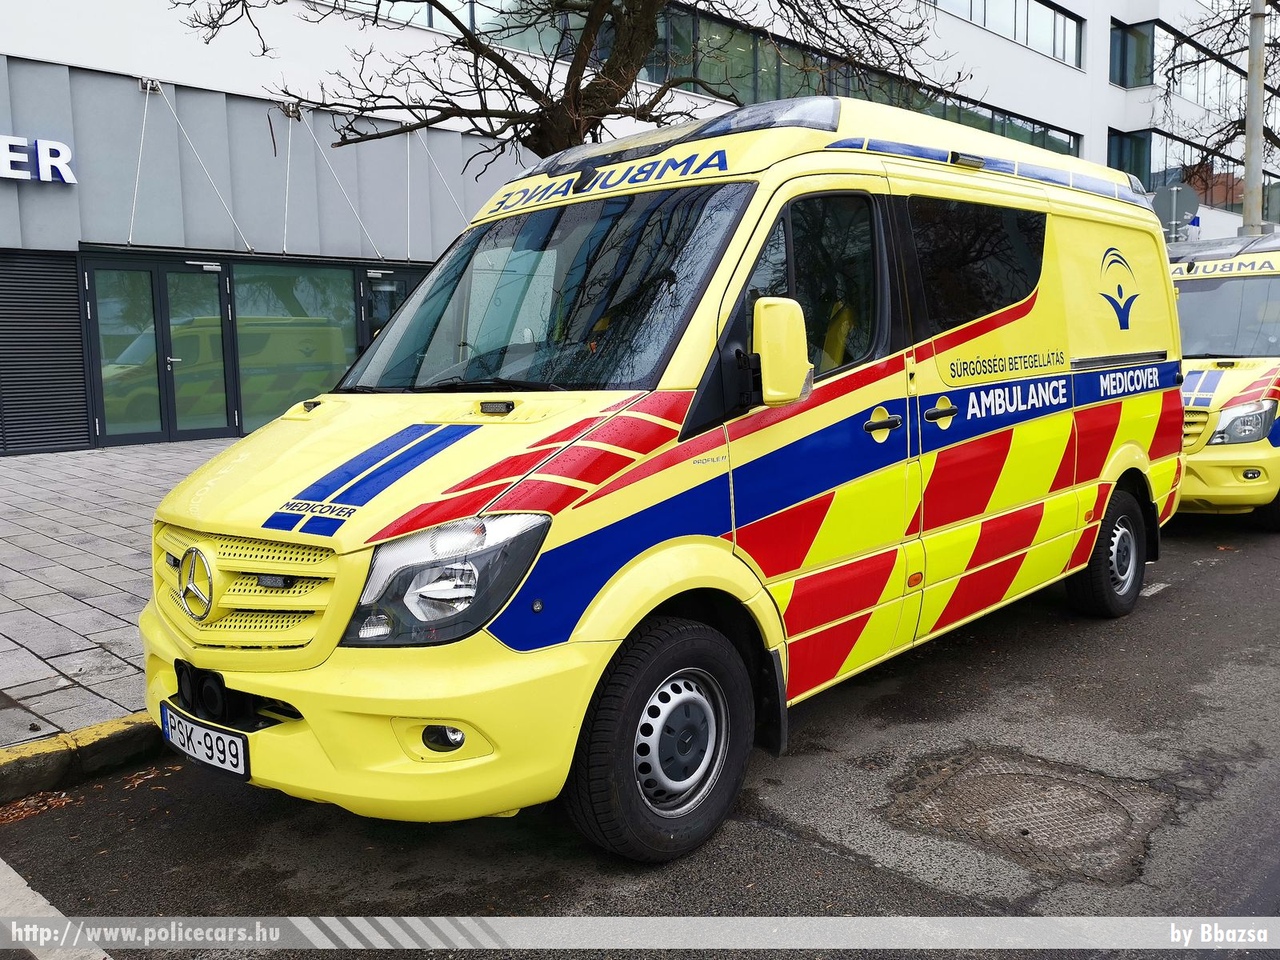 Mercedes Sprinter II facelift, Medicover Zrt., fotó: Bbazsa
Keywords: mentő mentőautó magyar Magyarország hungarian Hungary ambulance PSK-999